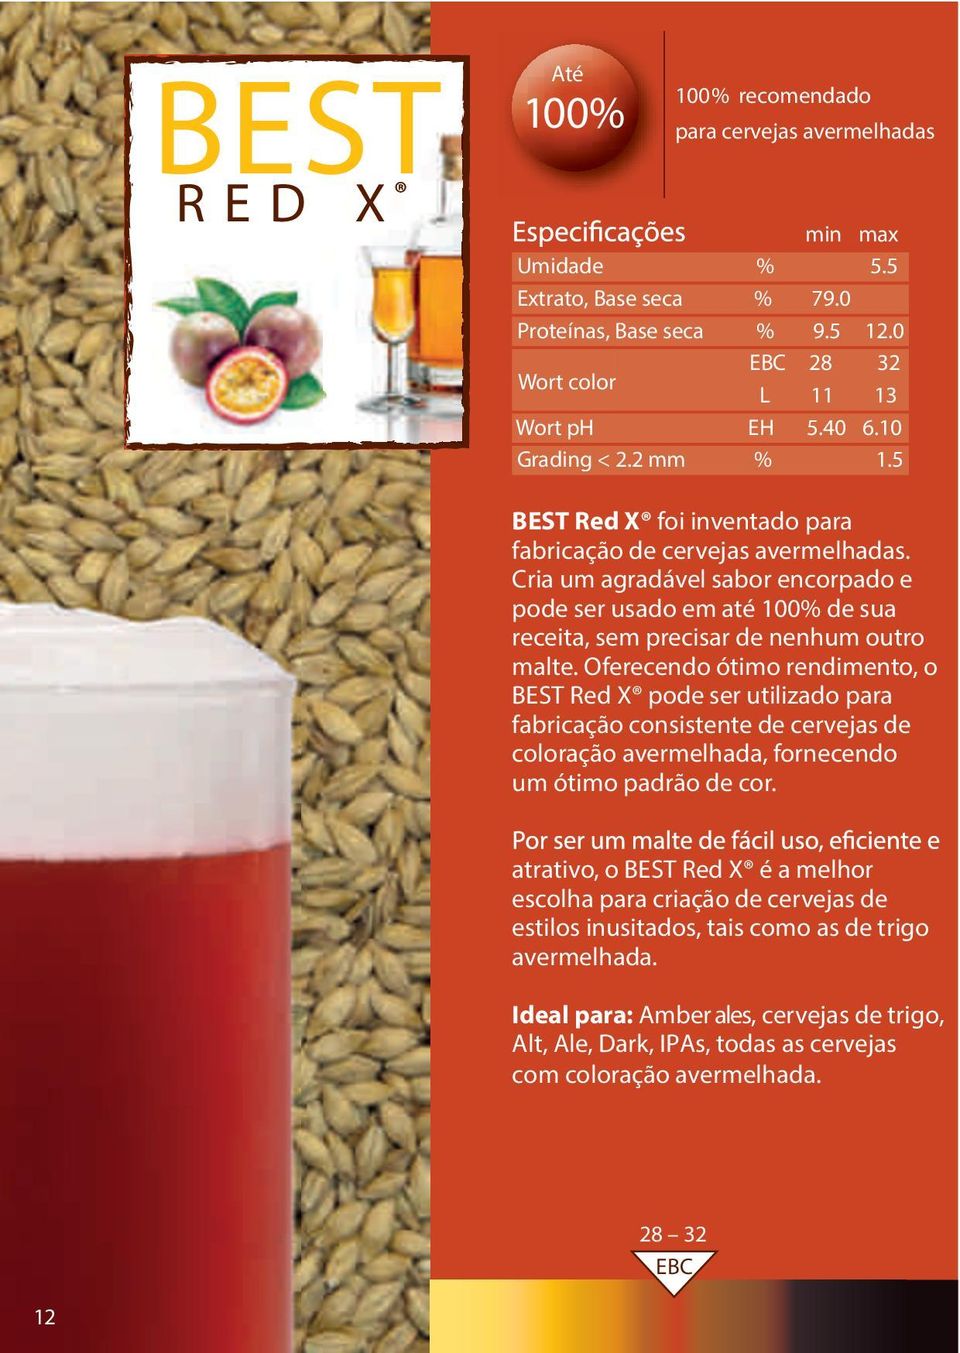 Oferecendo ótimo rendimento, o BEST Red X pode ser utilizado para fabricação consistente de cervejas de coloração avermelhada, fornecendo um ótimo padrão de cor.